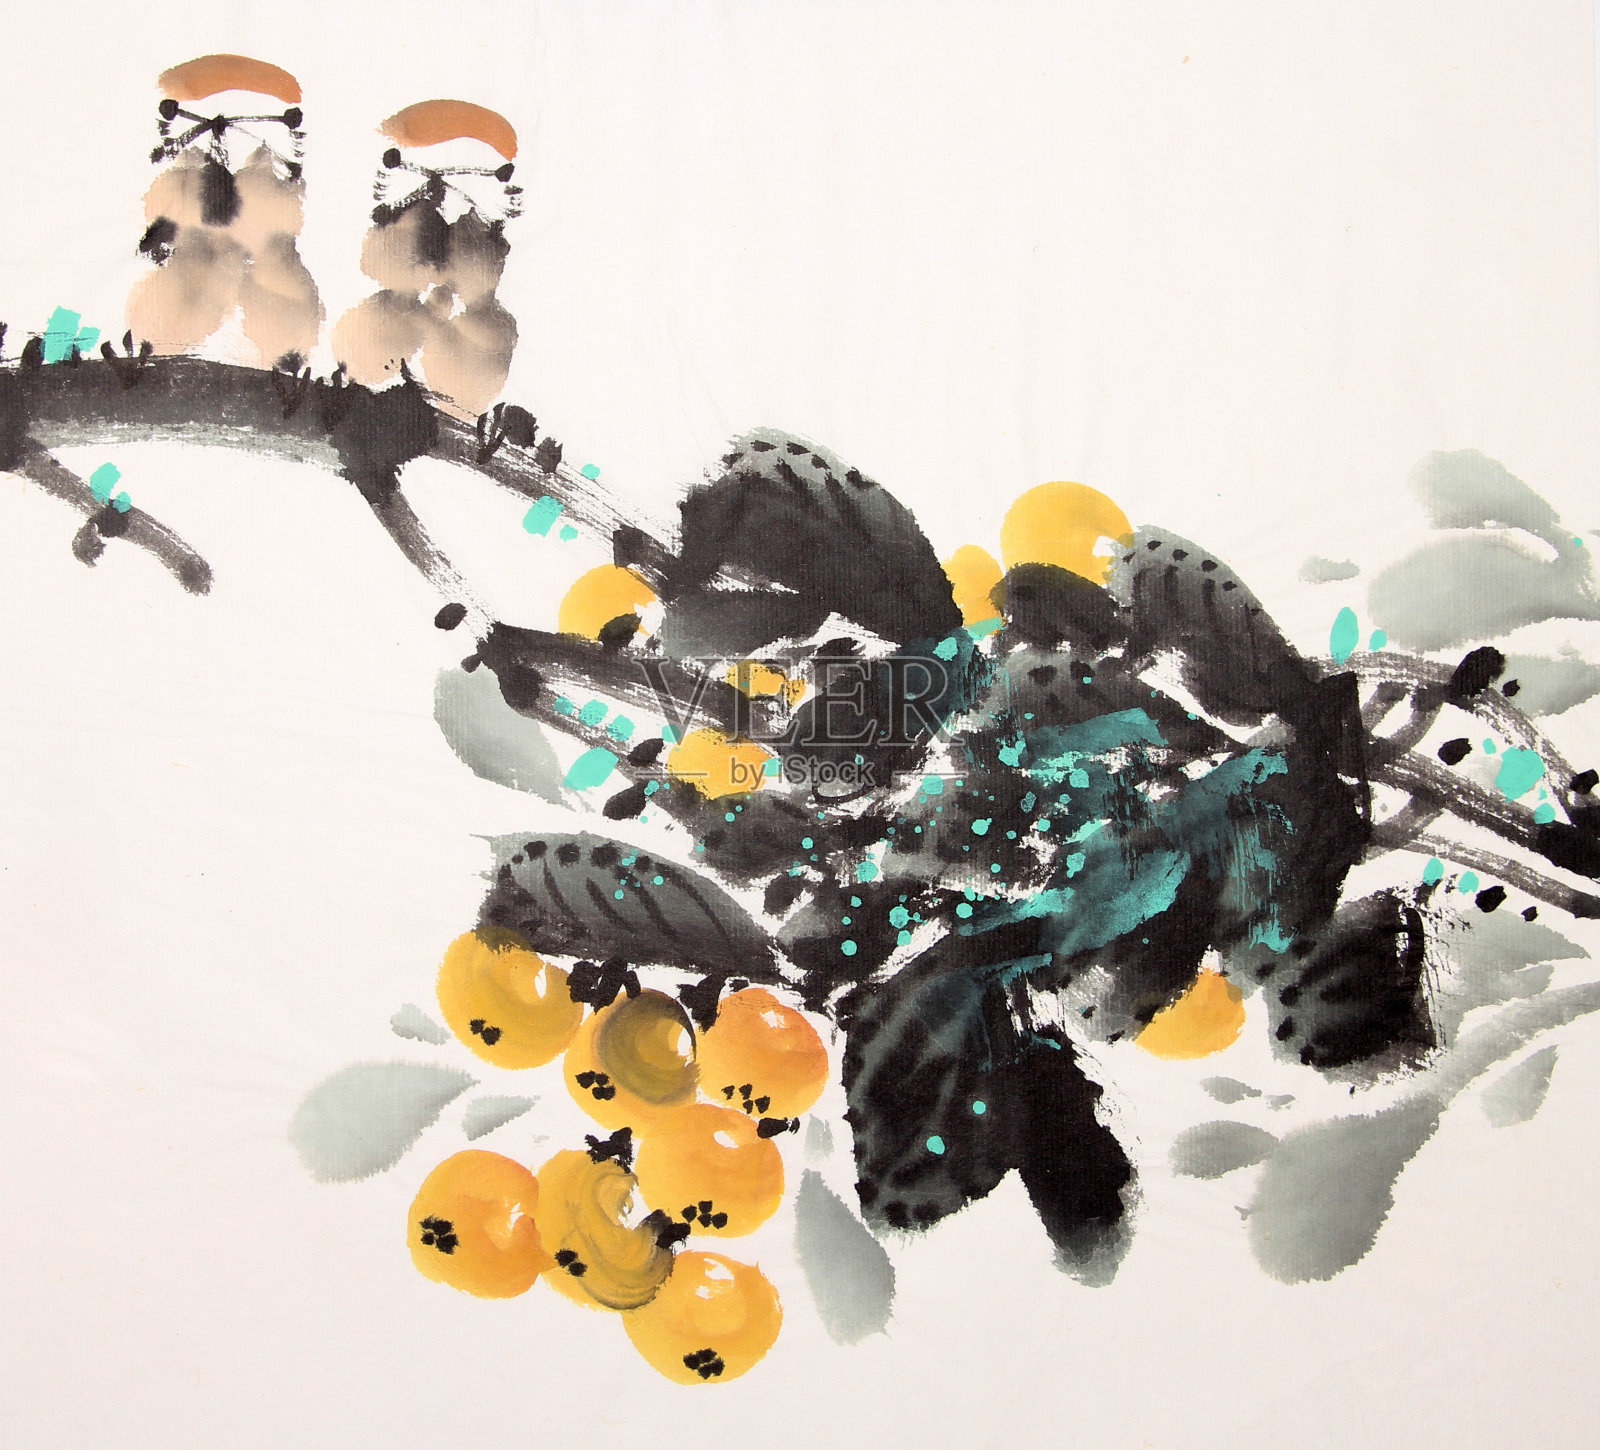 中国水墨画鸟和植物插画图片素材